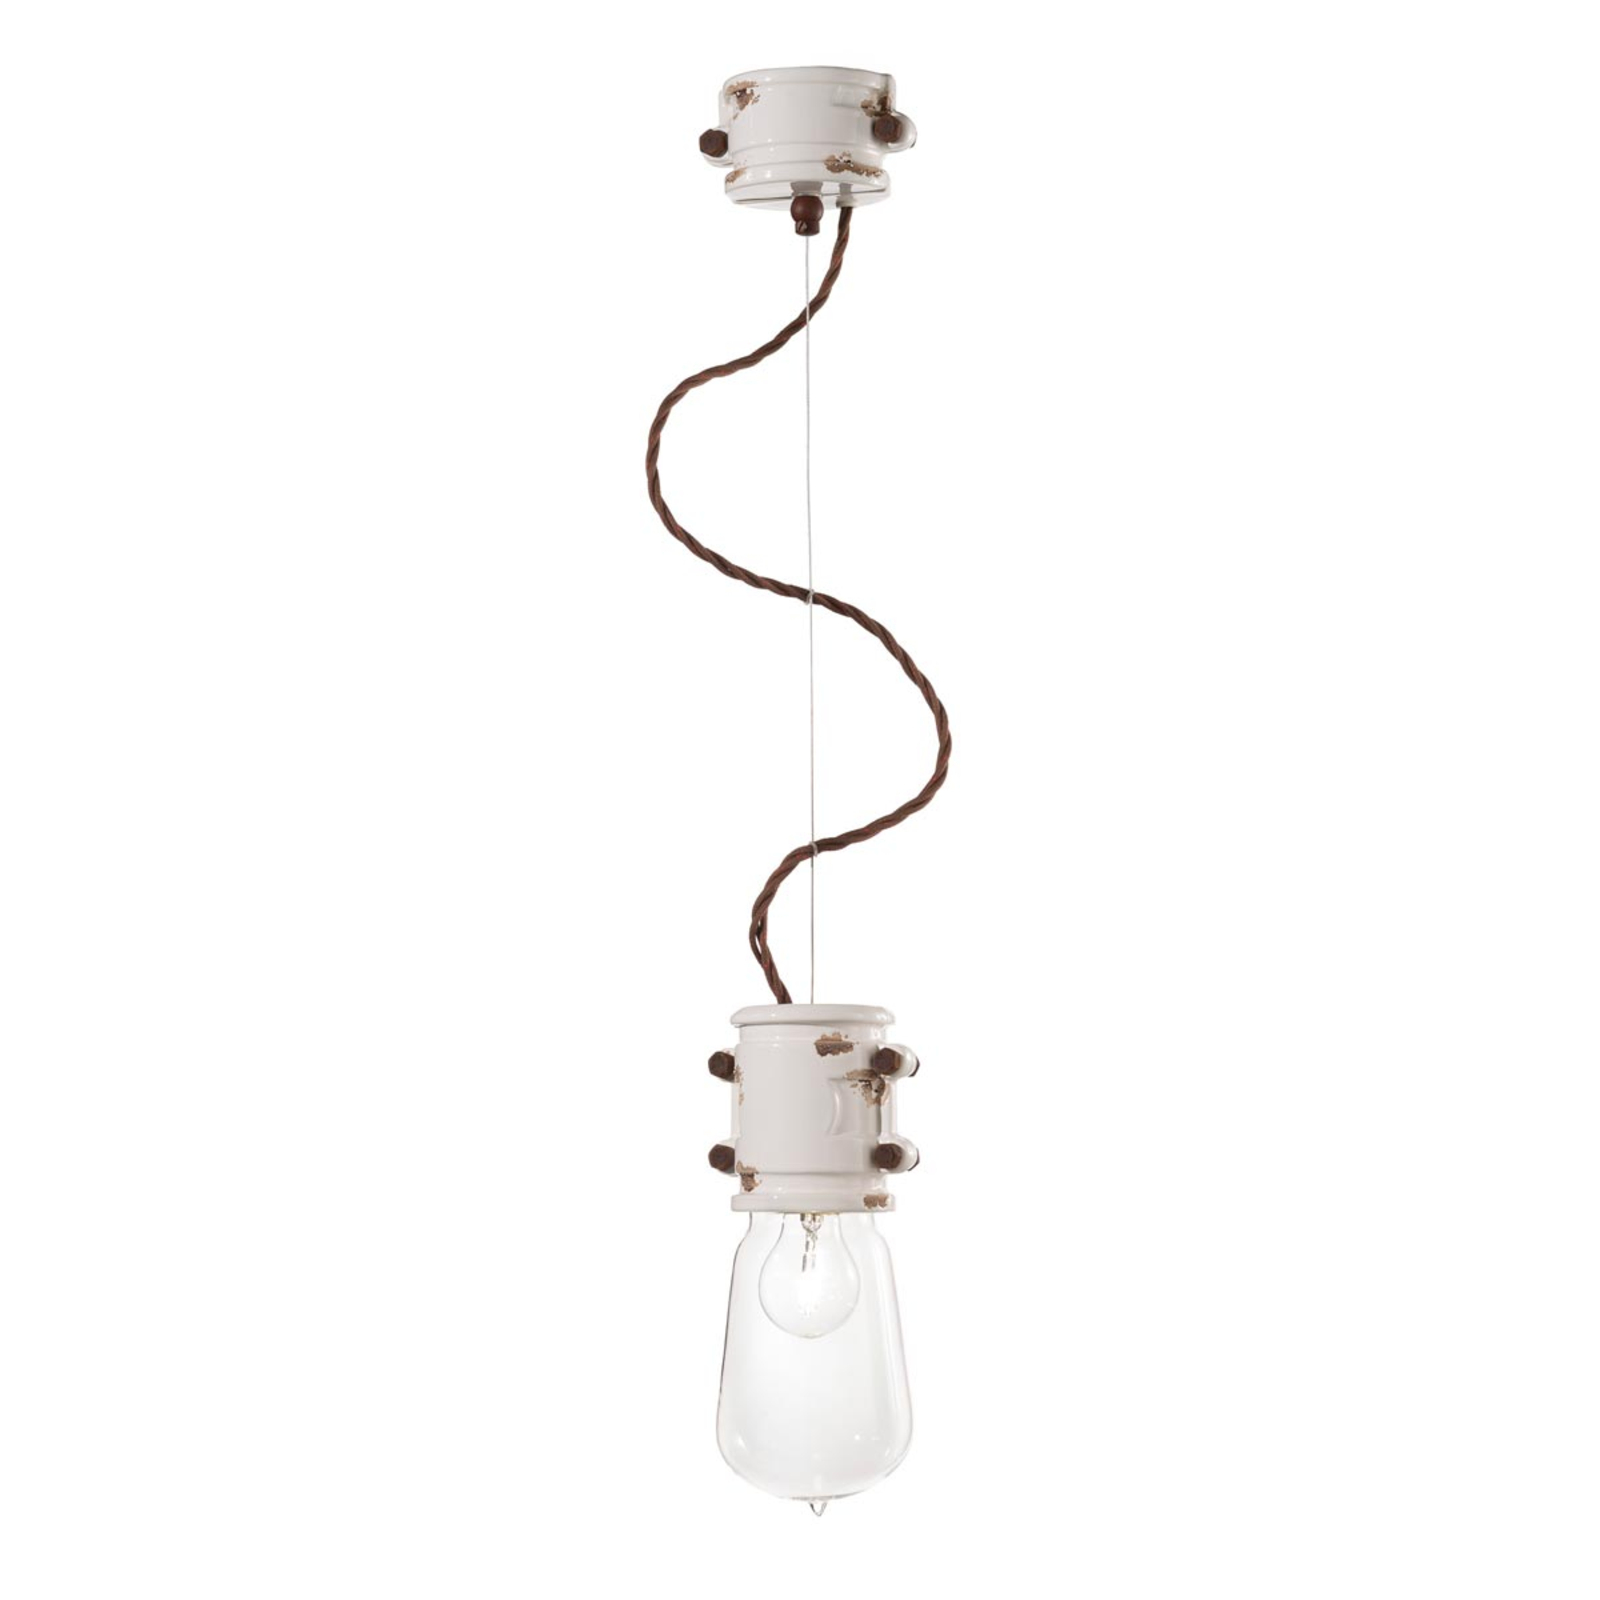 Bílé závěsné svítidlo Nicolo v minimalistickém designu